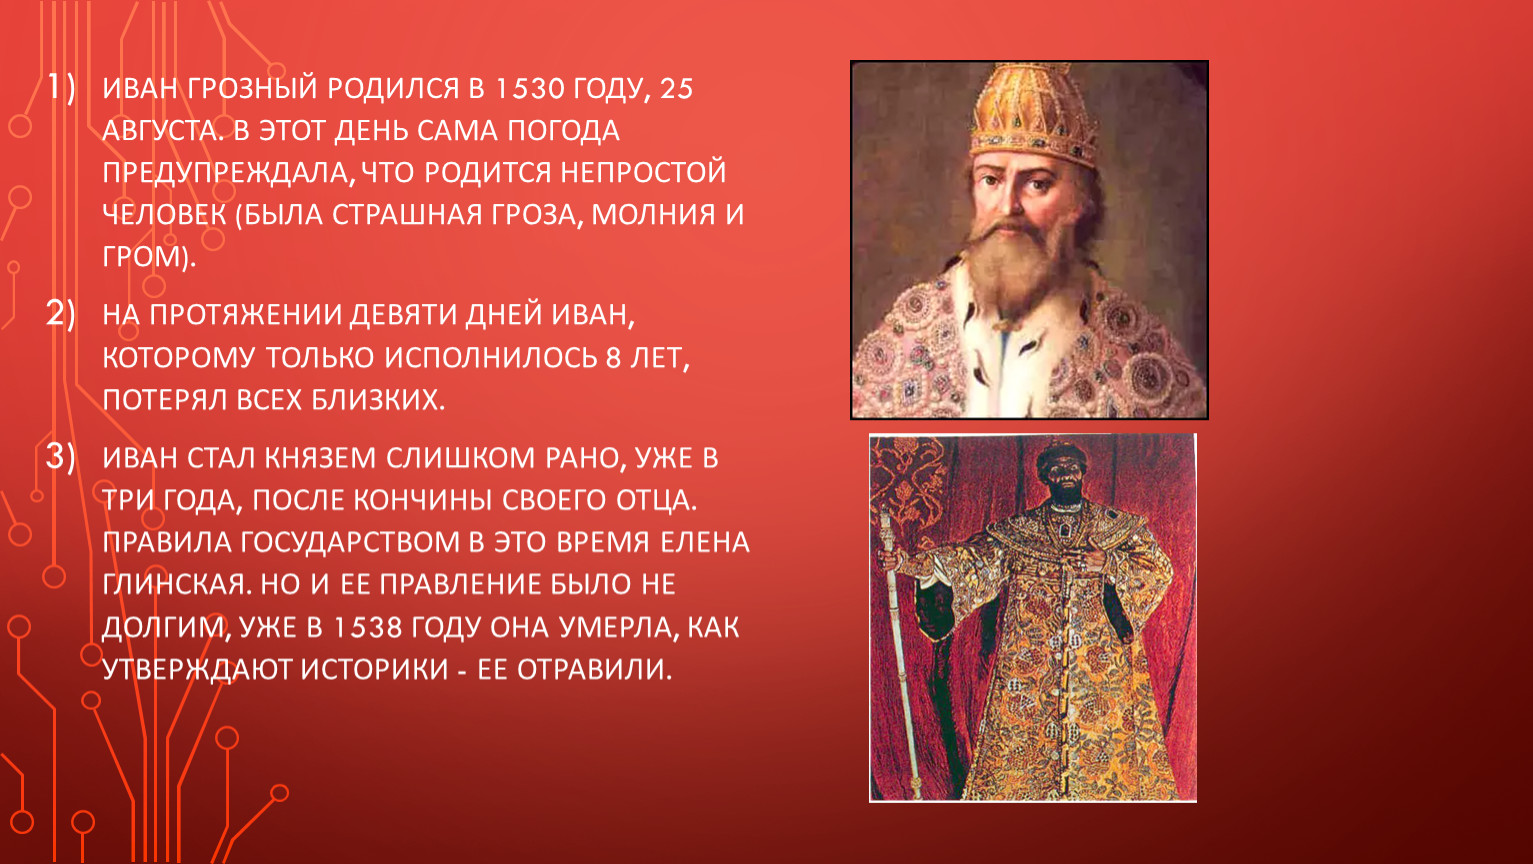 Факты о иване 3. 3 Факта о Иване Грозном. 3 Факта про Ивана 4 Грозного.